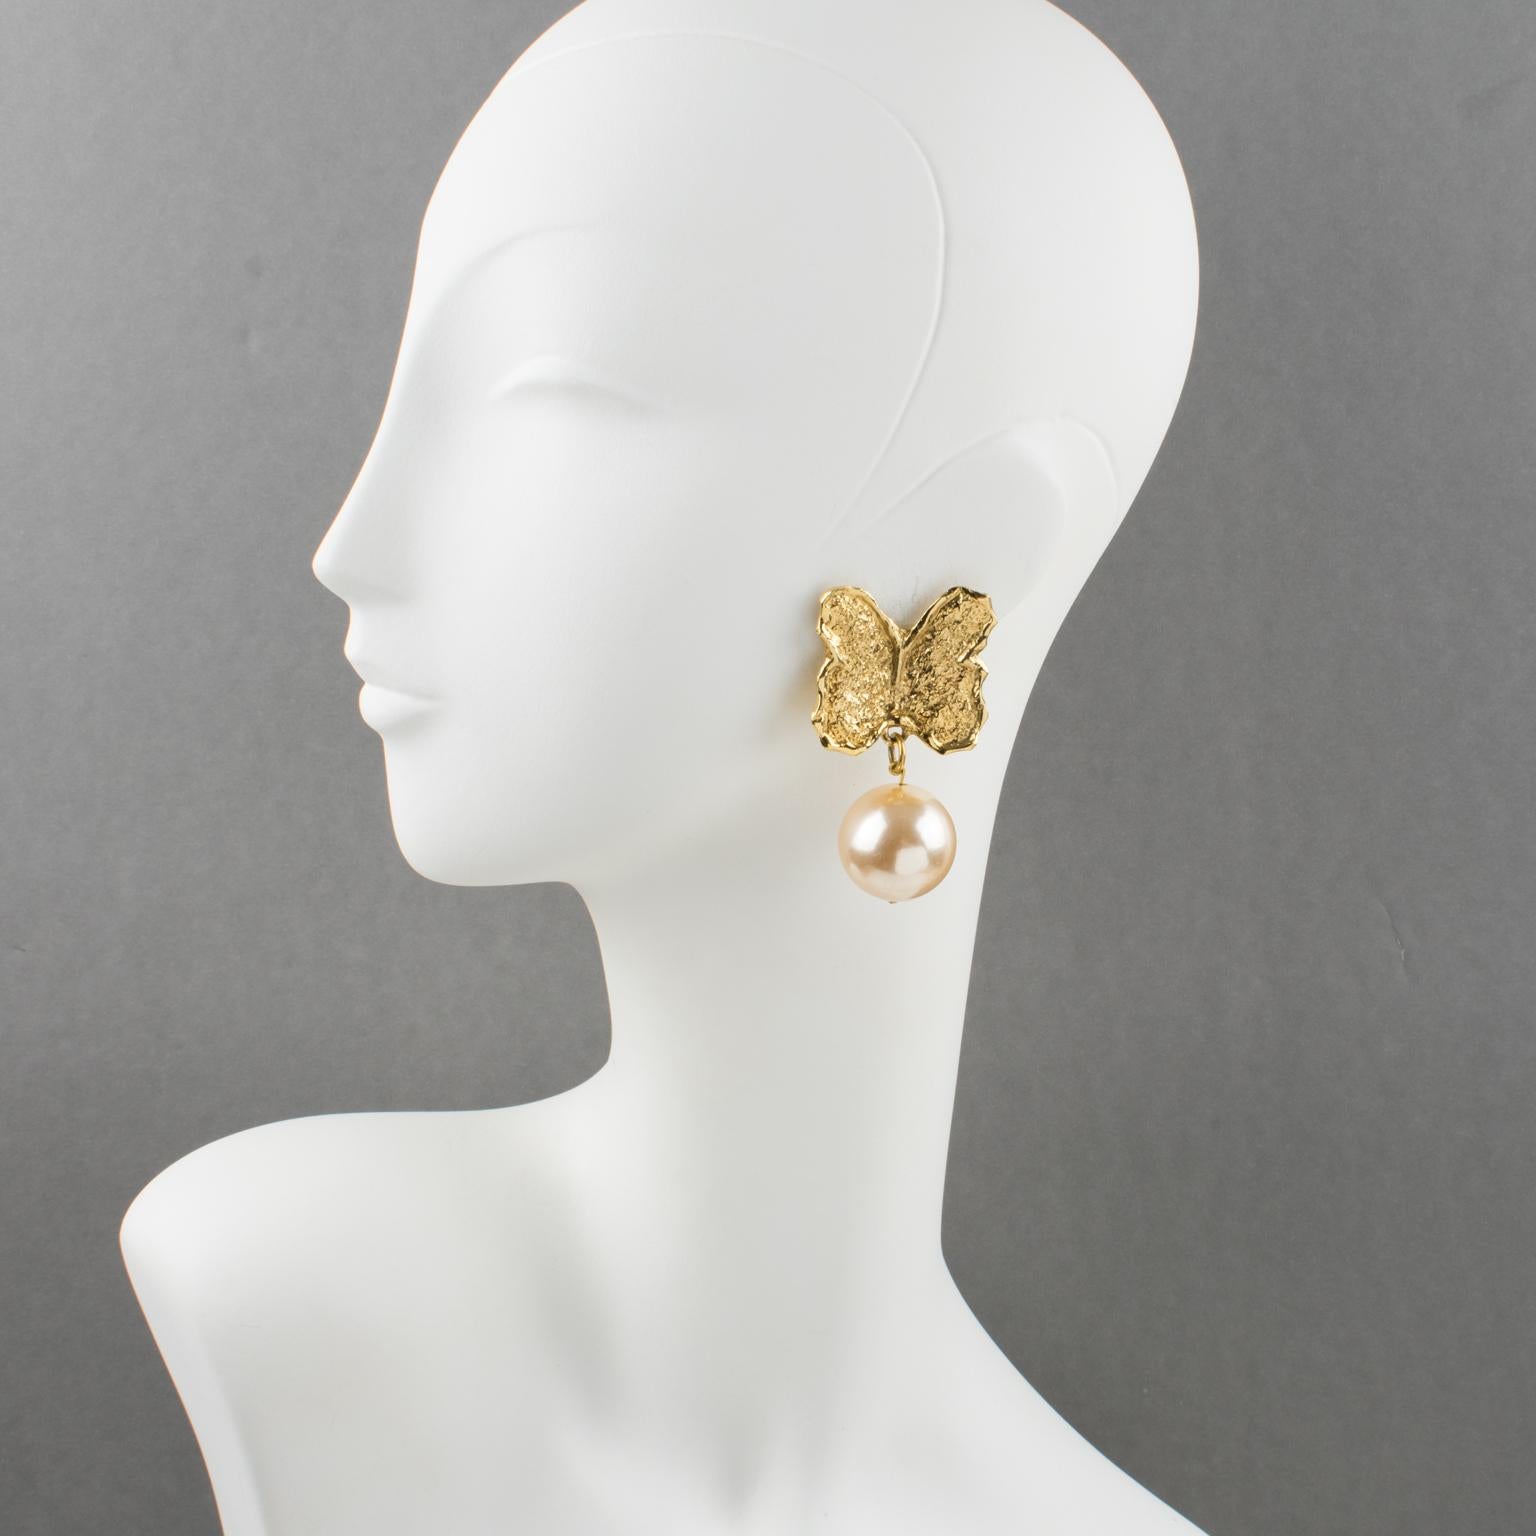 Diese eleganten Guy Laroche Paris Schmetterlingsohrringe zum Anstecken haben eine übergroße, baumelnde Form mit einem geschnitzten und strukturierten Schmetterling aus vergoldetem Metall, der mit einer beeindruckenden Perlenimitation in Puderrosa